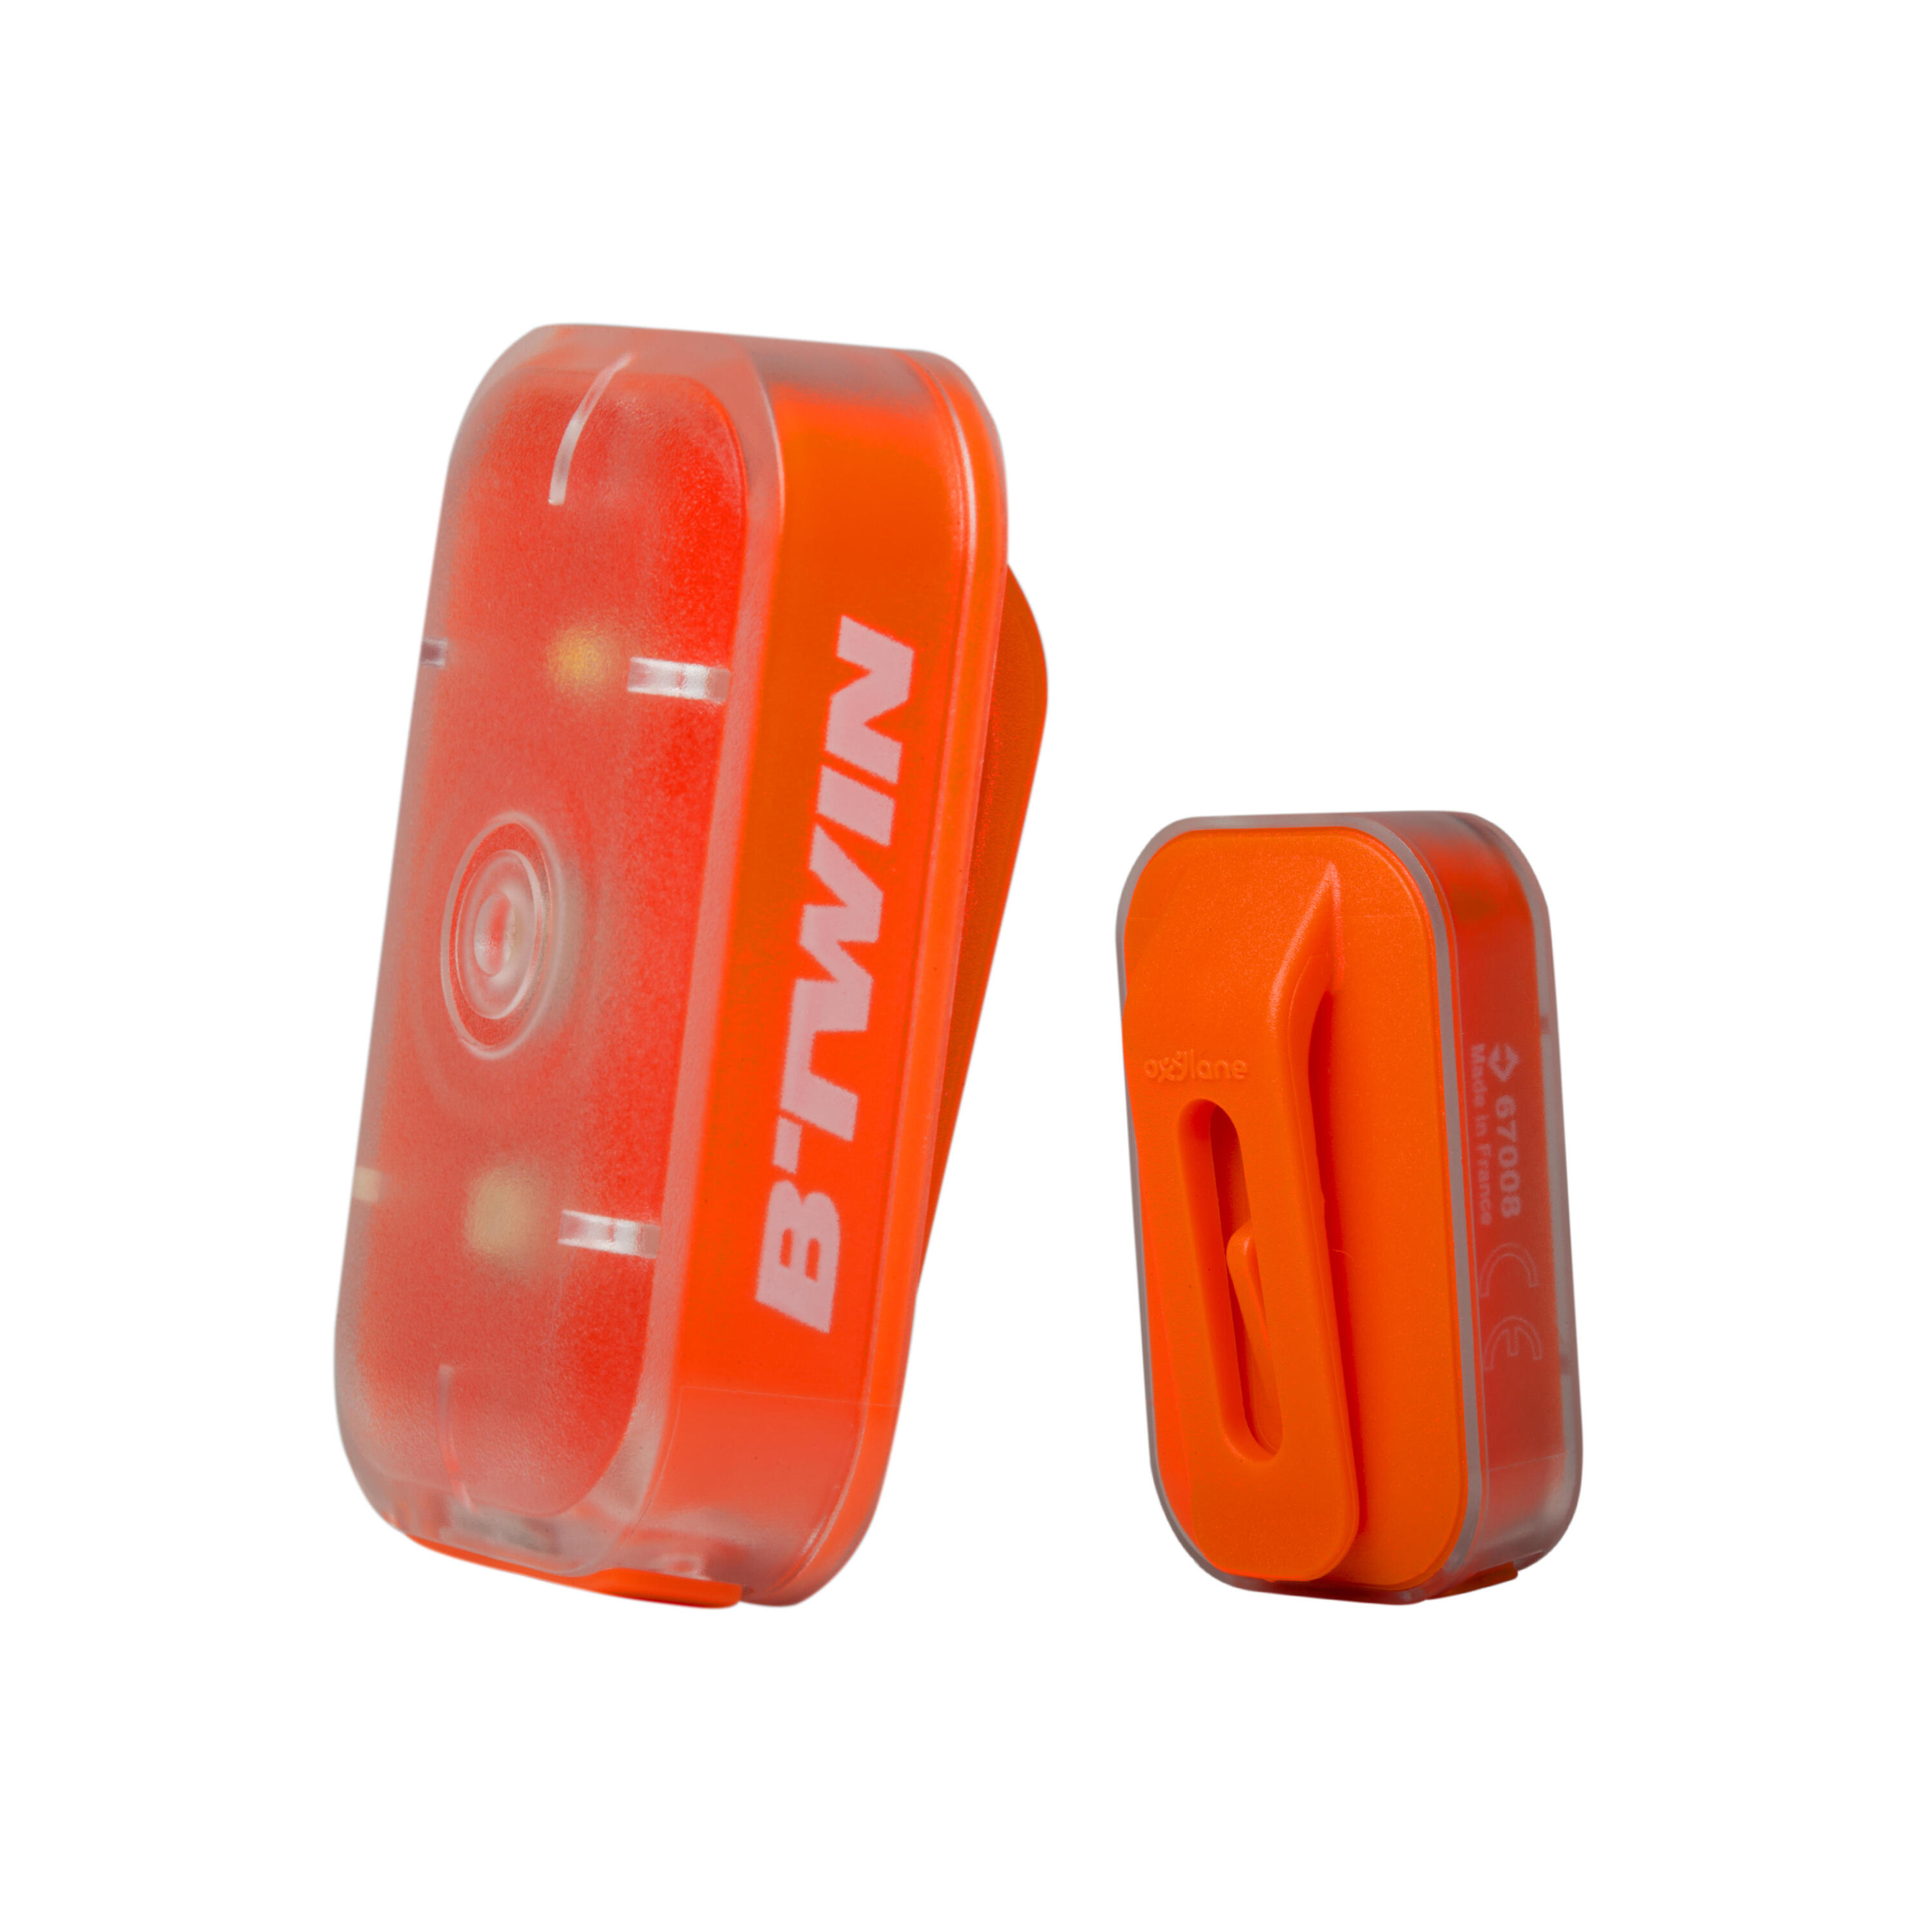 ELOPS CL 500 Front or Rear LED USB Bike Light - Orange